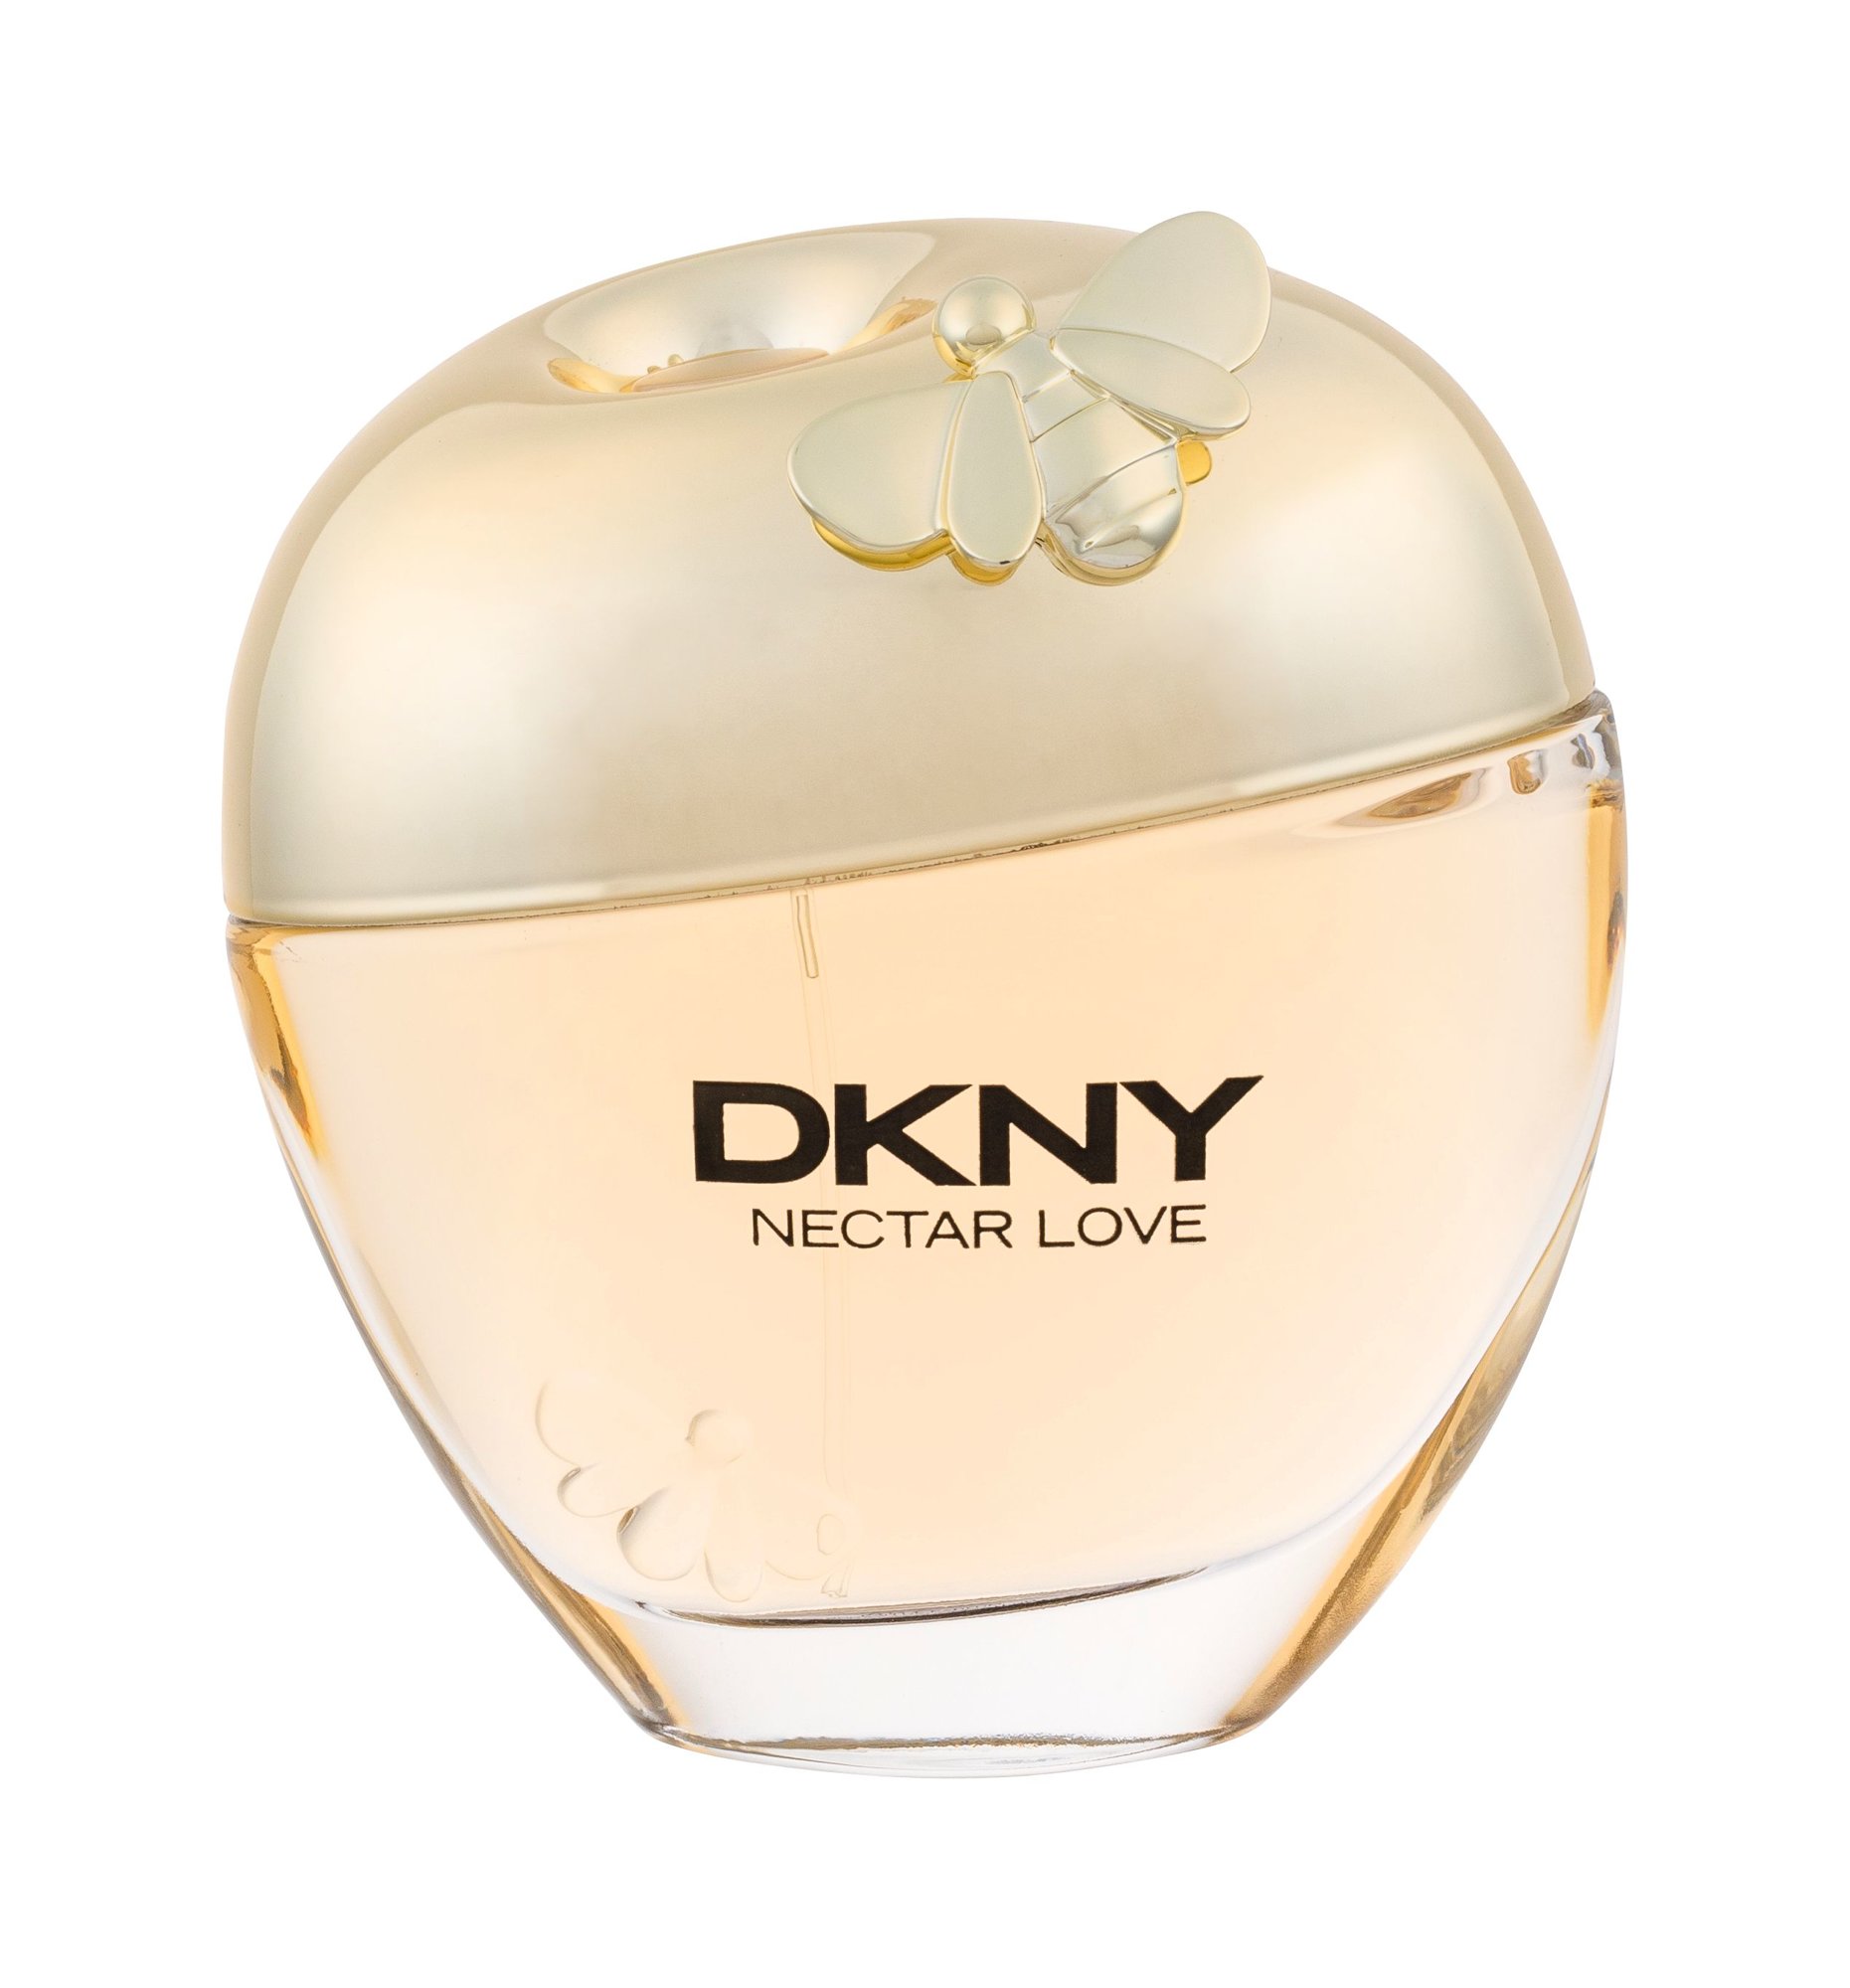 DKNY Nectar Love, Parfumovaná voda 100ml